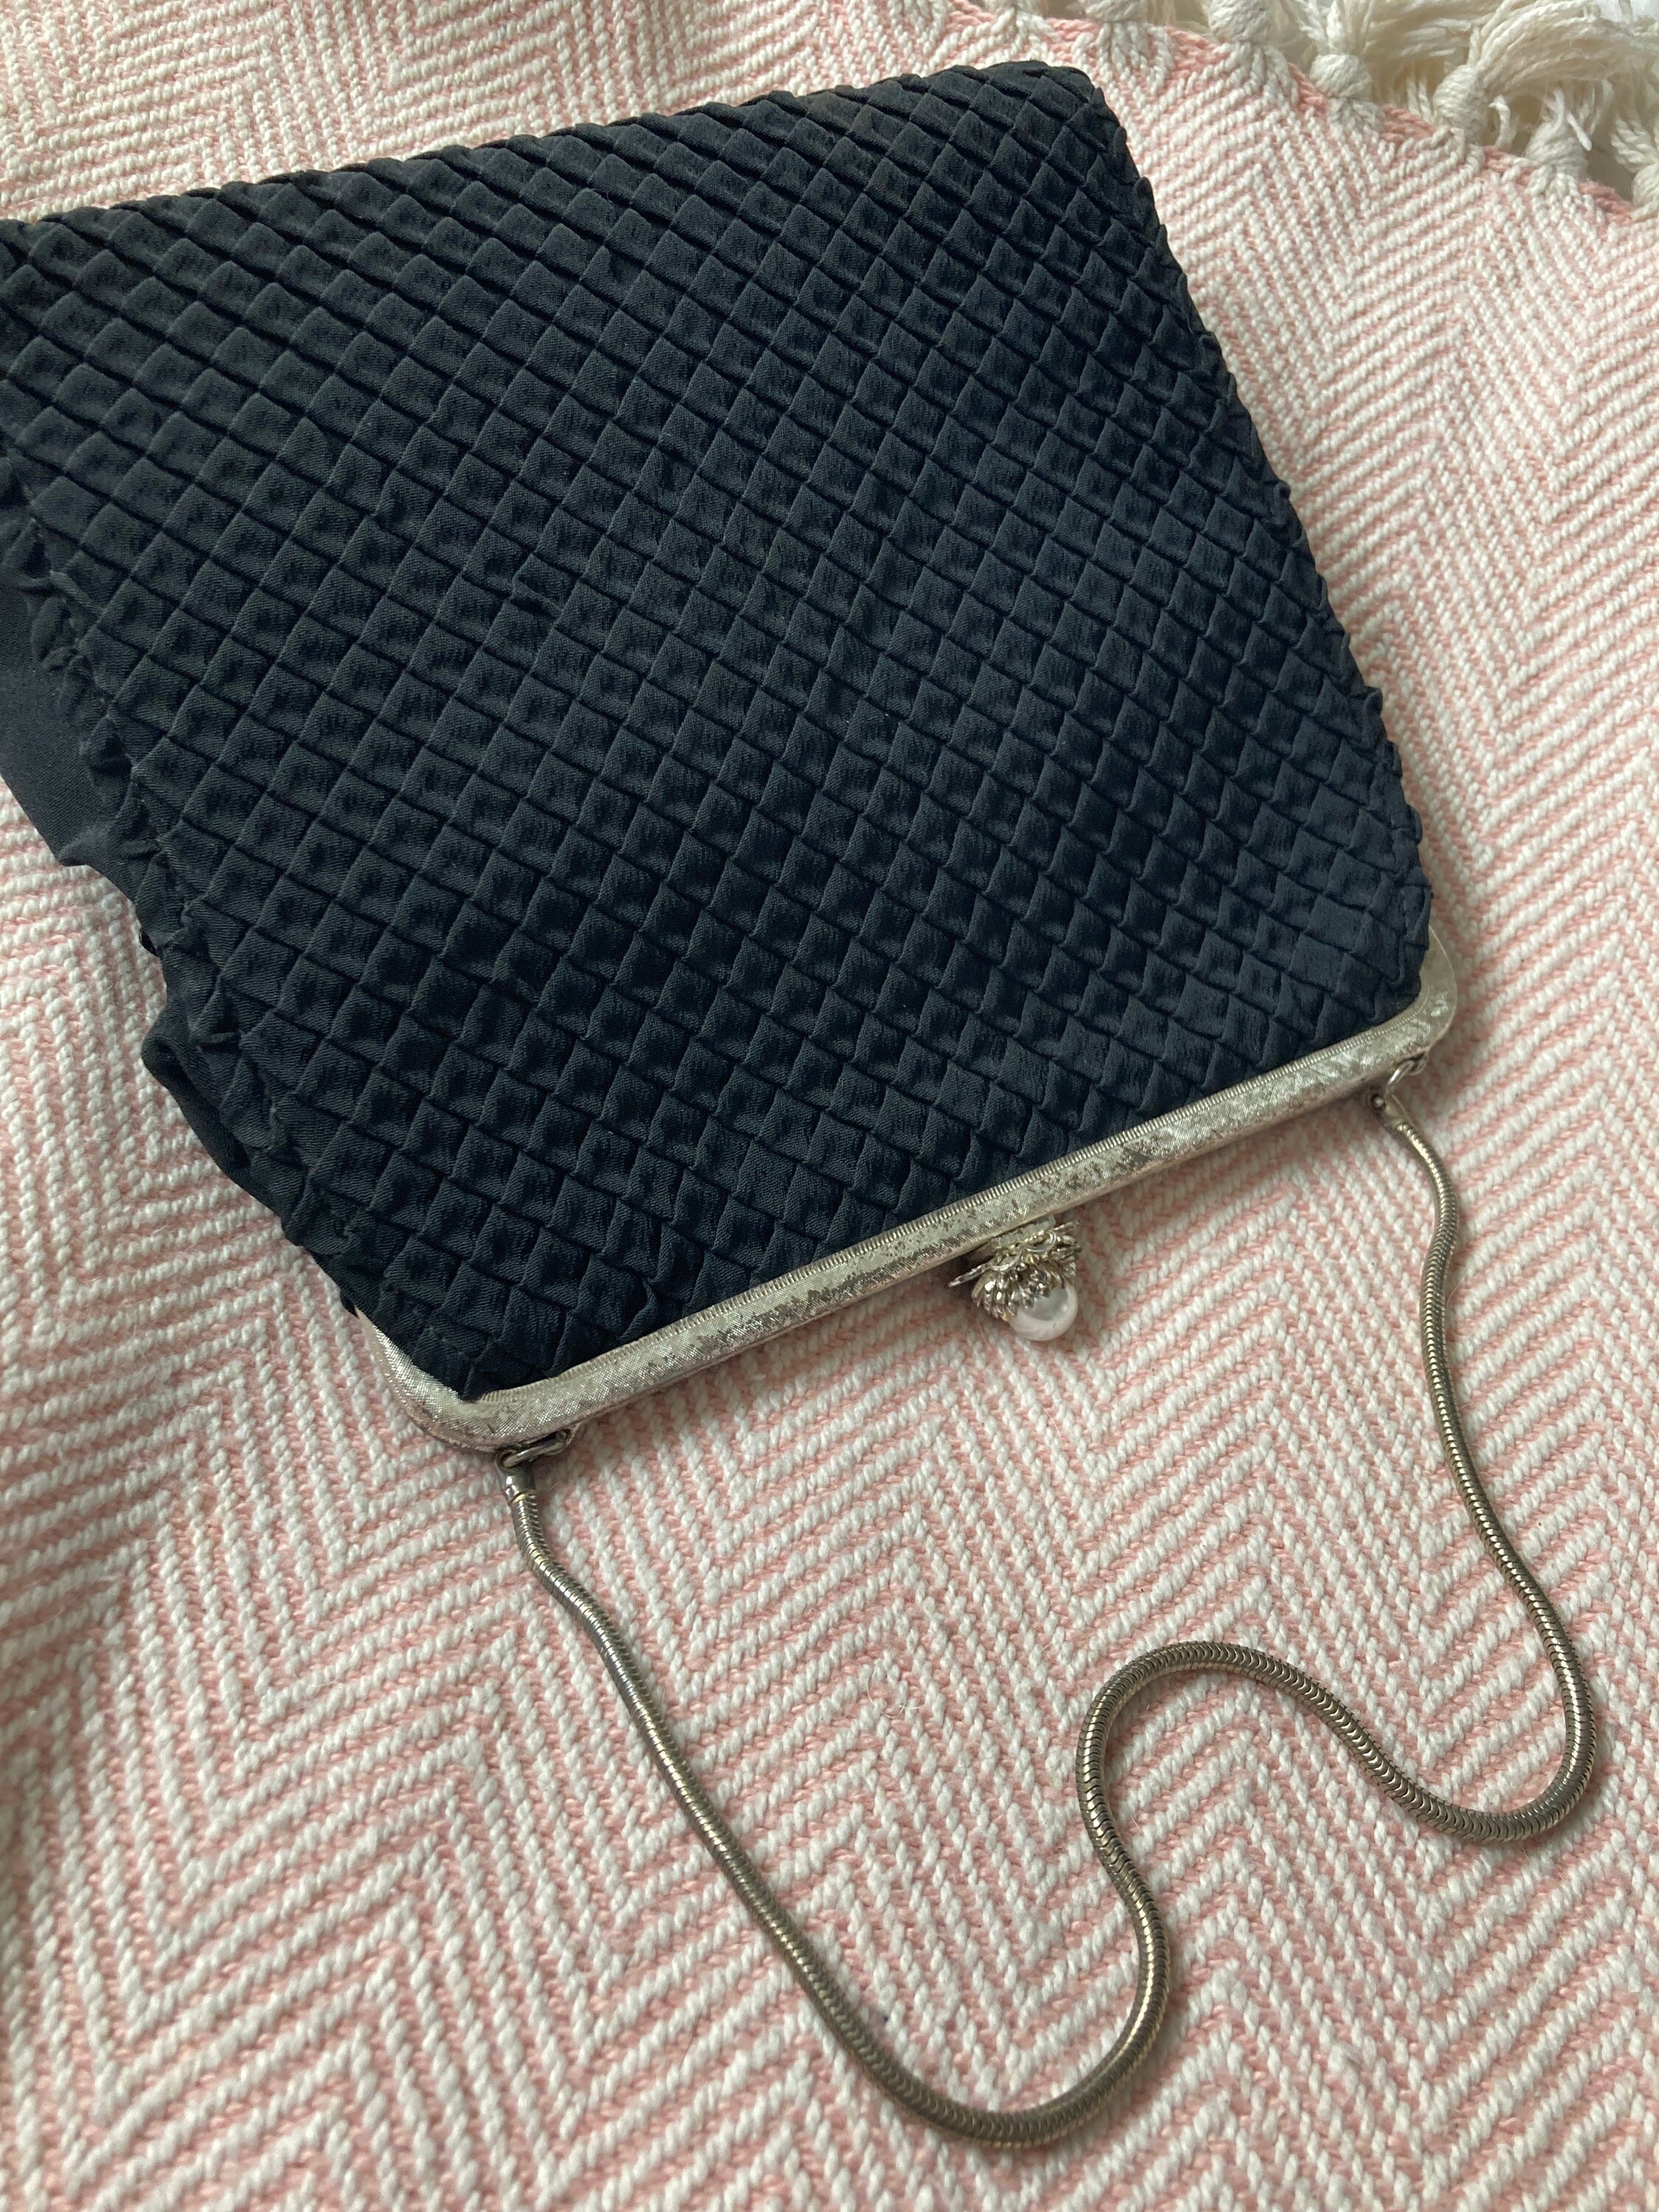 Vintage Art Deco Black Crepe Evening Bag Purse Geometric Cabochon Clasp